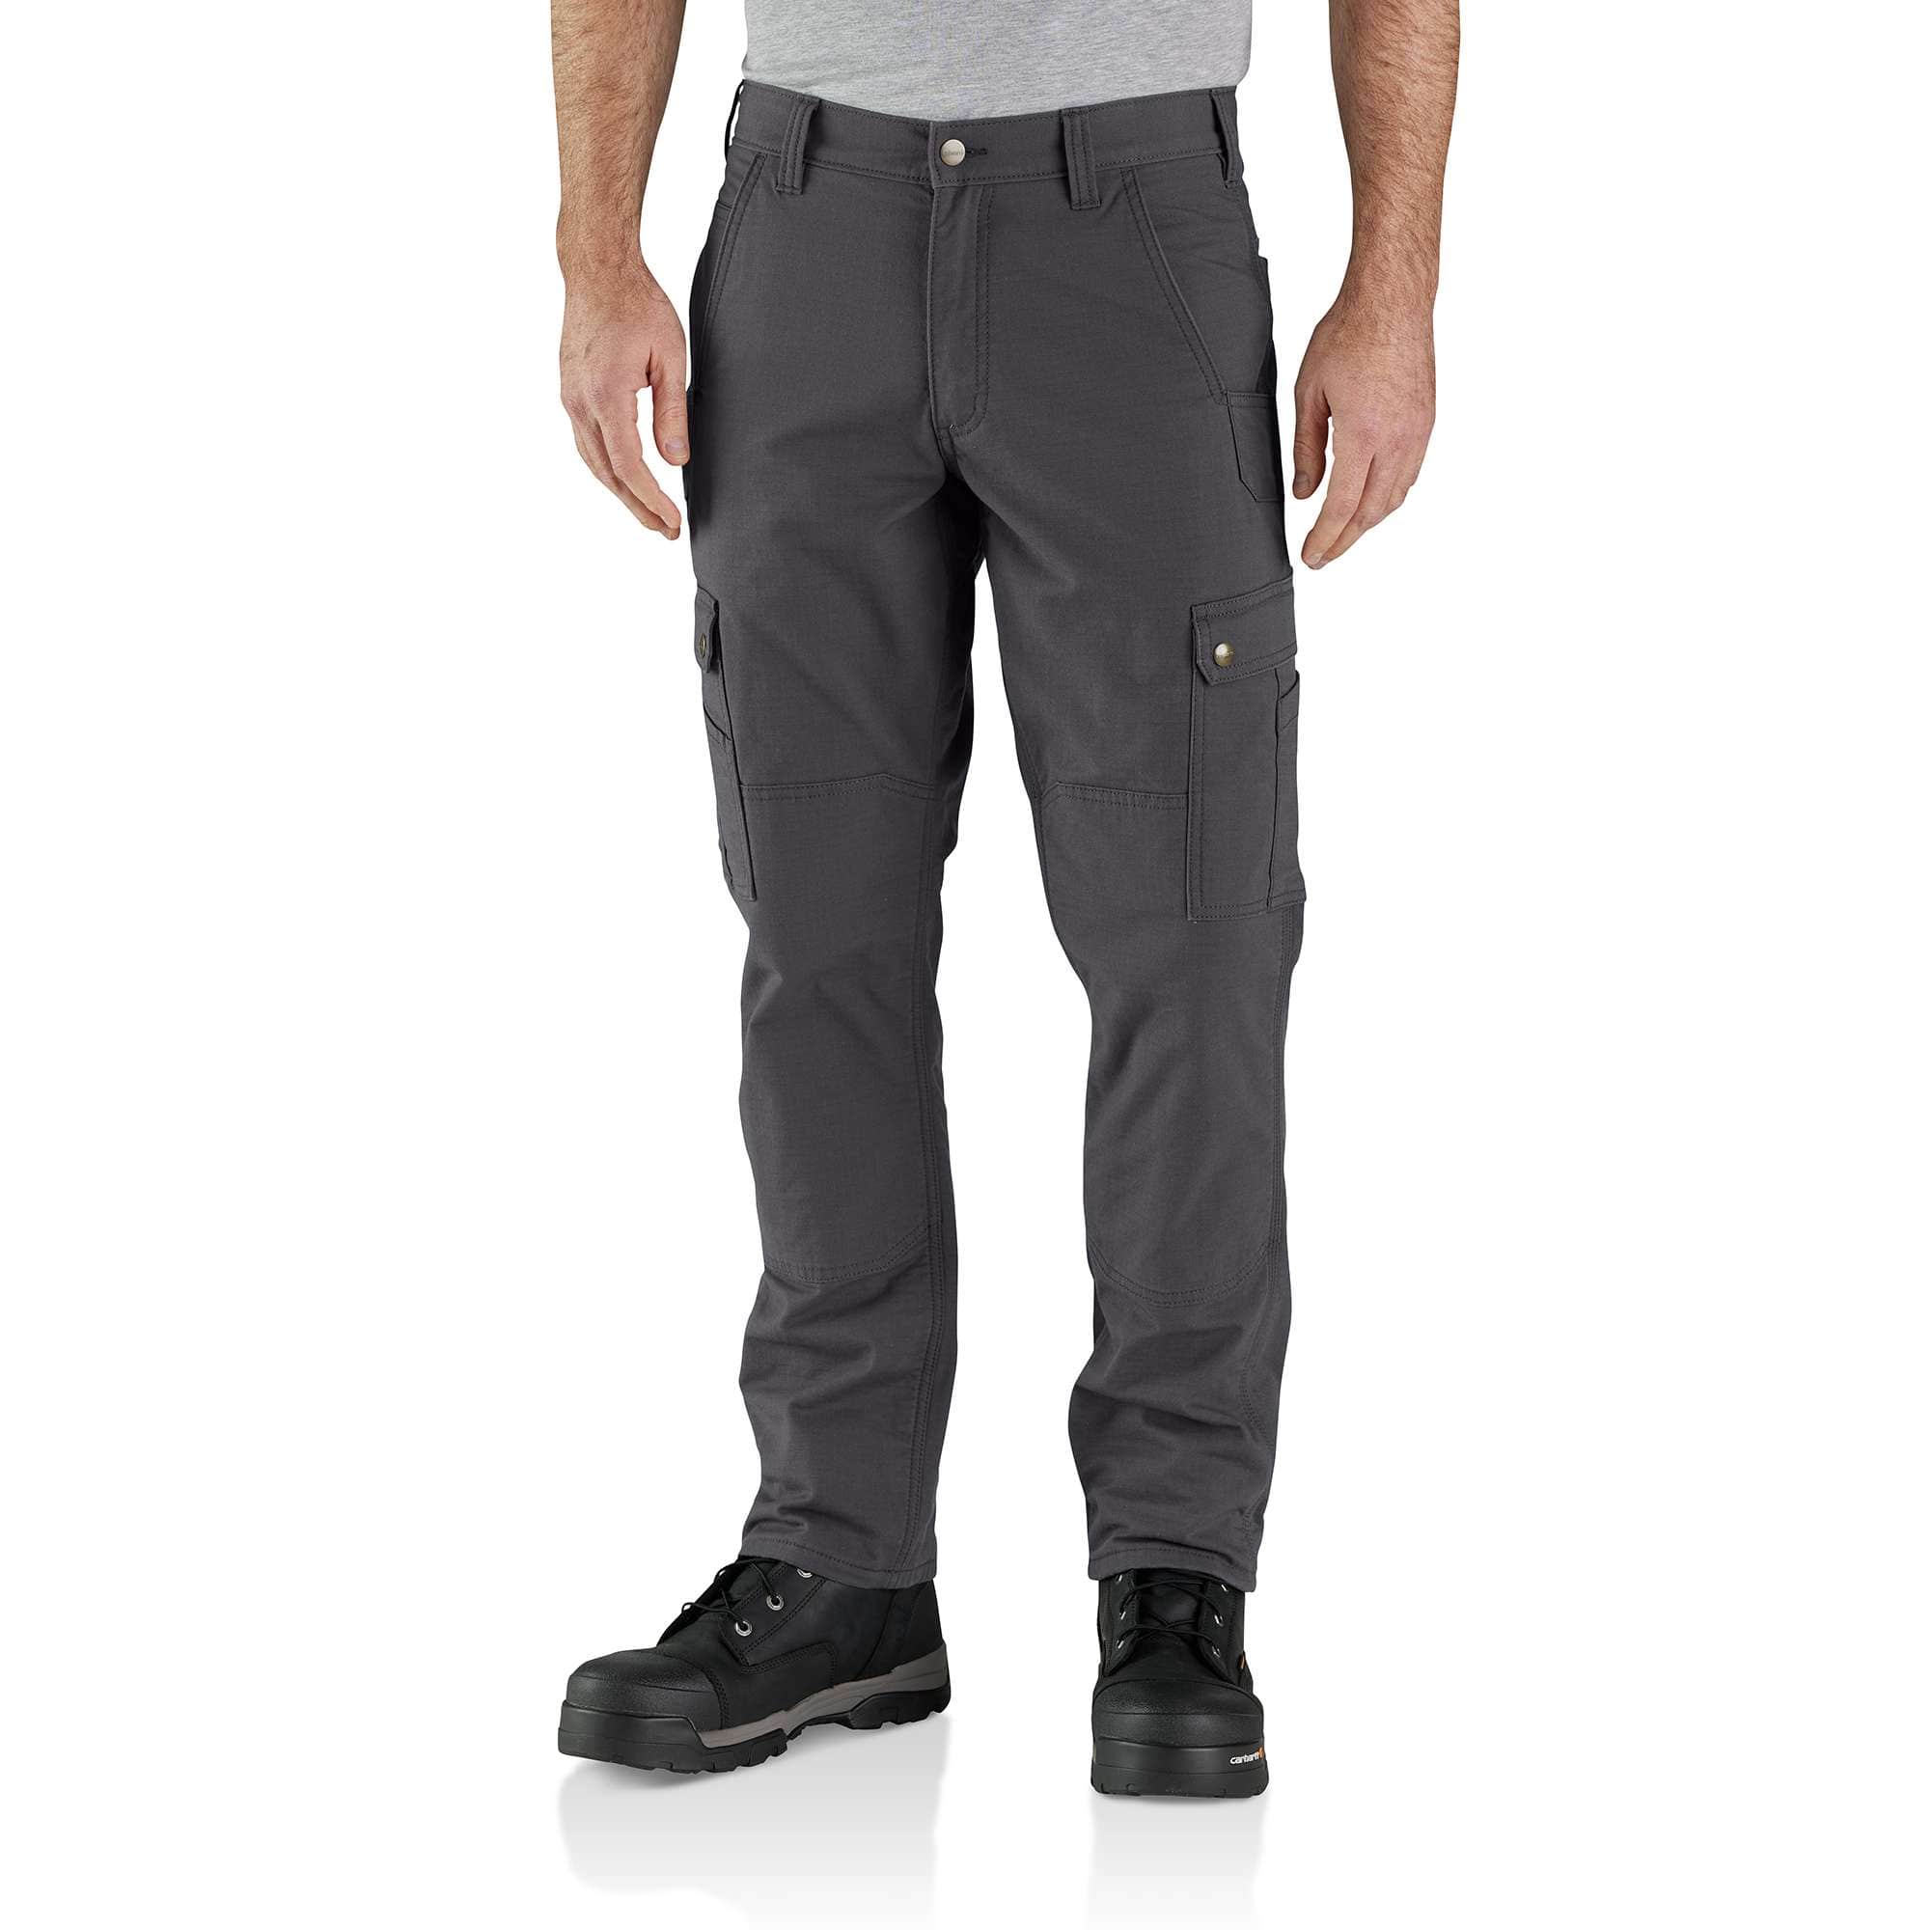 Coleman Men's Gray Canvas Cargo Work Pants (34 X 30) in the Pants